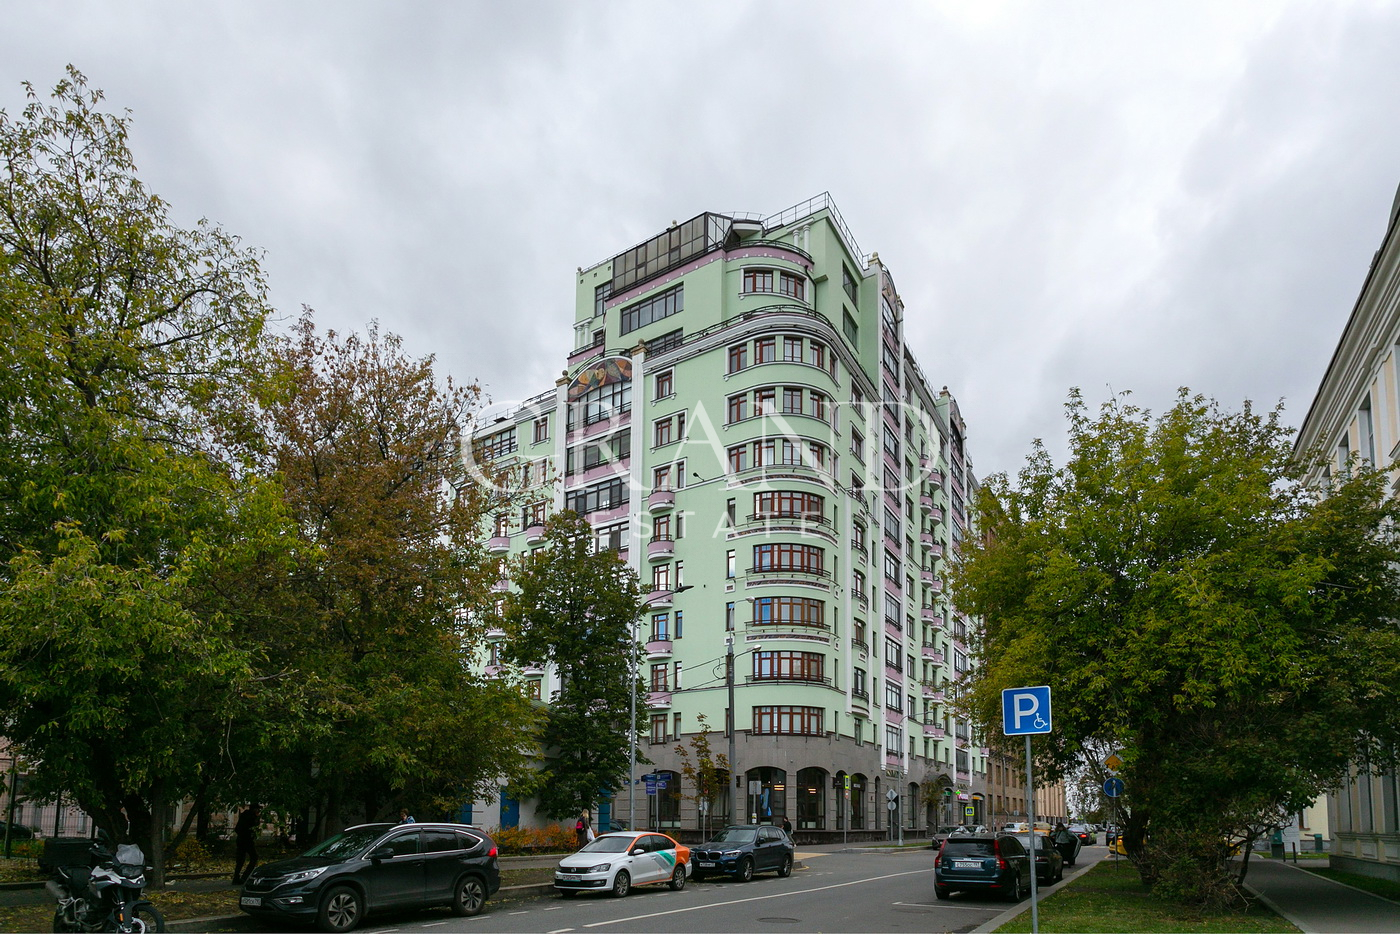 Продам квартиру в Москве по адресу Климентовский переулок, 2, площадь 300 квм Недвижимость Москва (Россия)   Звоните